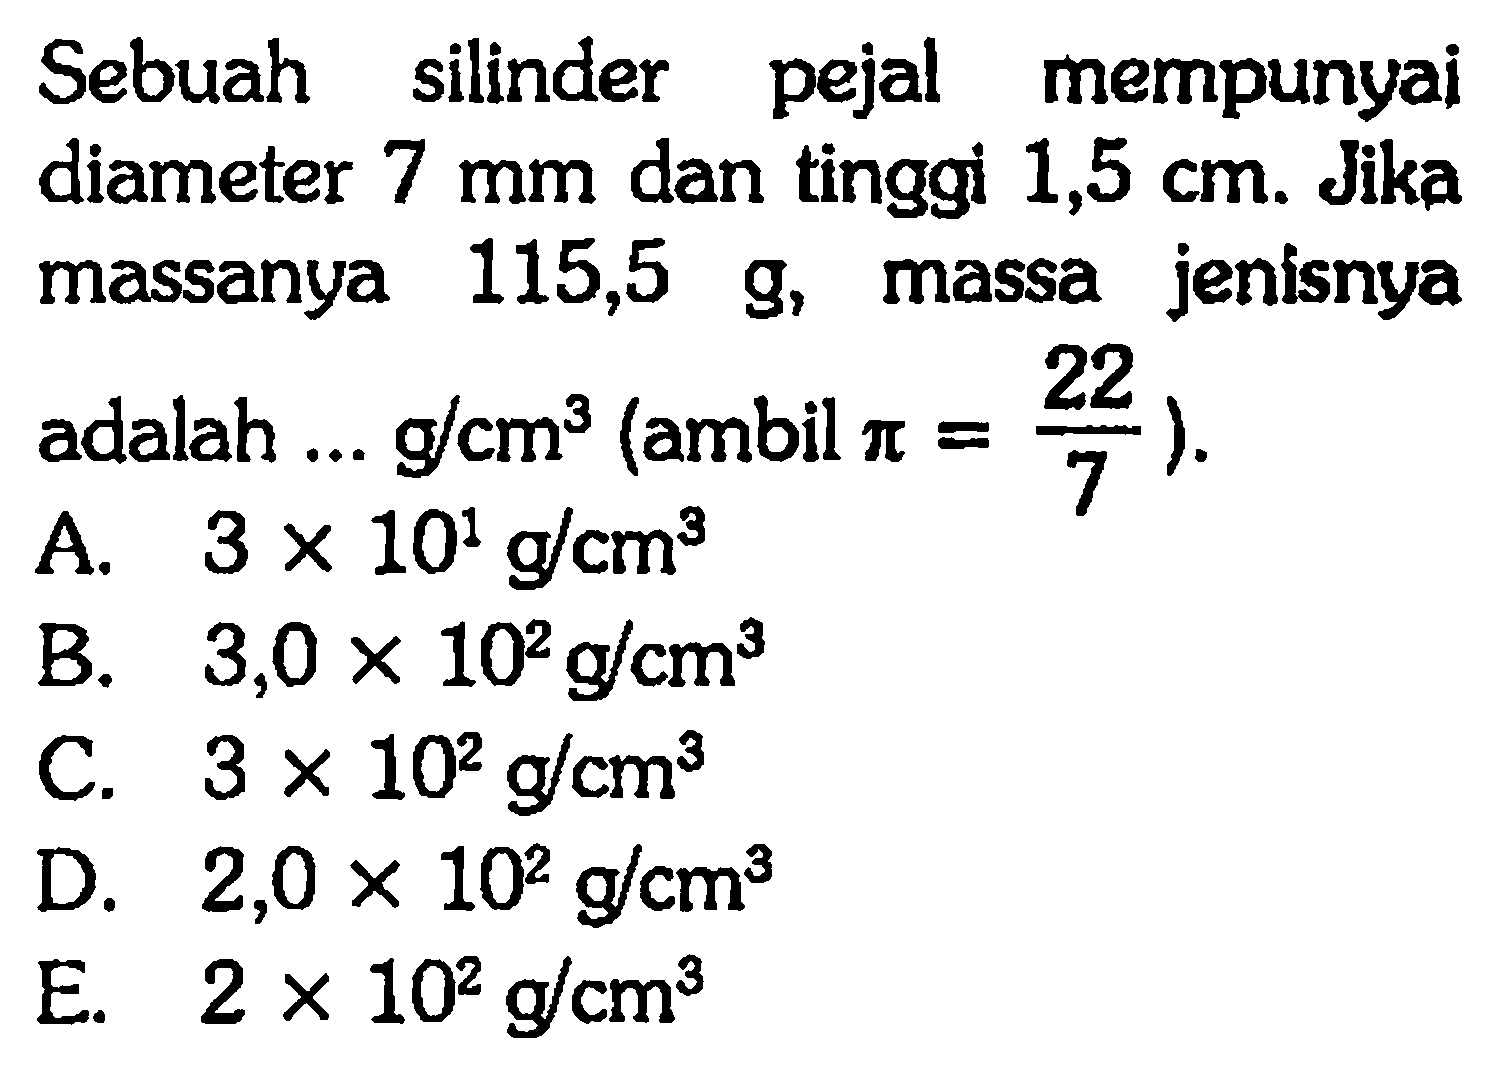 Sebuah silinder pejal mempunyai diameter 7 mm dan tinggi 1,5 cm. Jika massanya 115,5 g, massa jenisnya adalah g/cm^3 (ambil pi = 22/7).